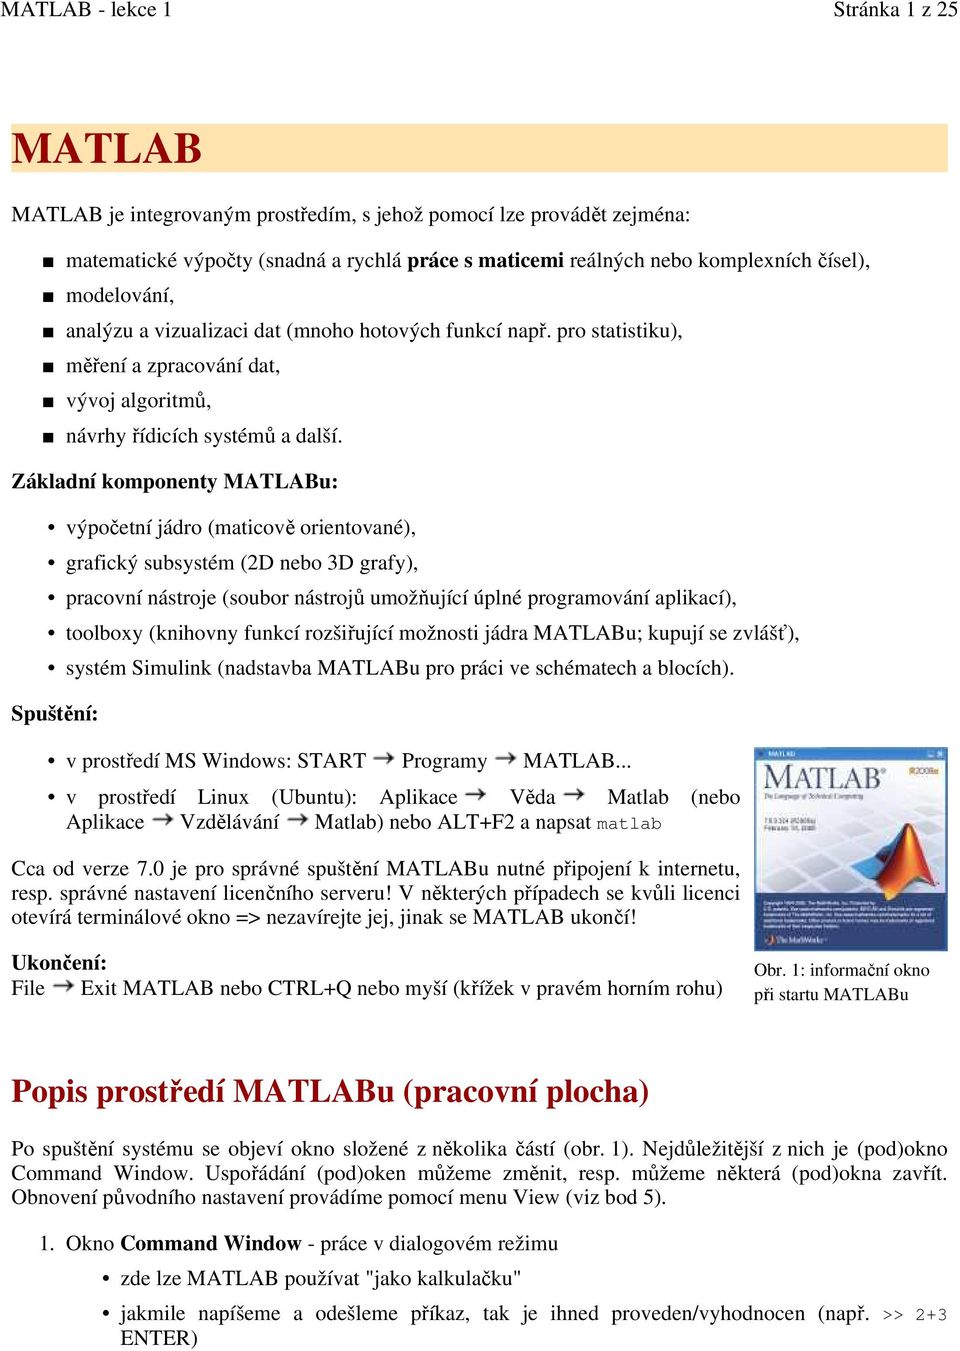 Základní komponenty MATLABu: výpočetní jádro (maticově orientované), grafický subsystém (2D nebo 3D grafy), pracovní nástroje (soubor nástrojů umožňující úplné programování aplikací), toolboxy